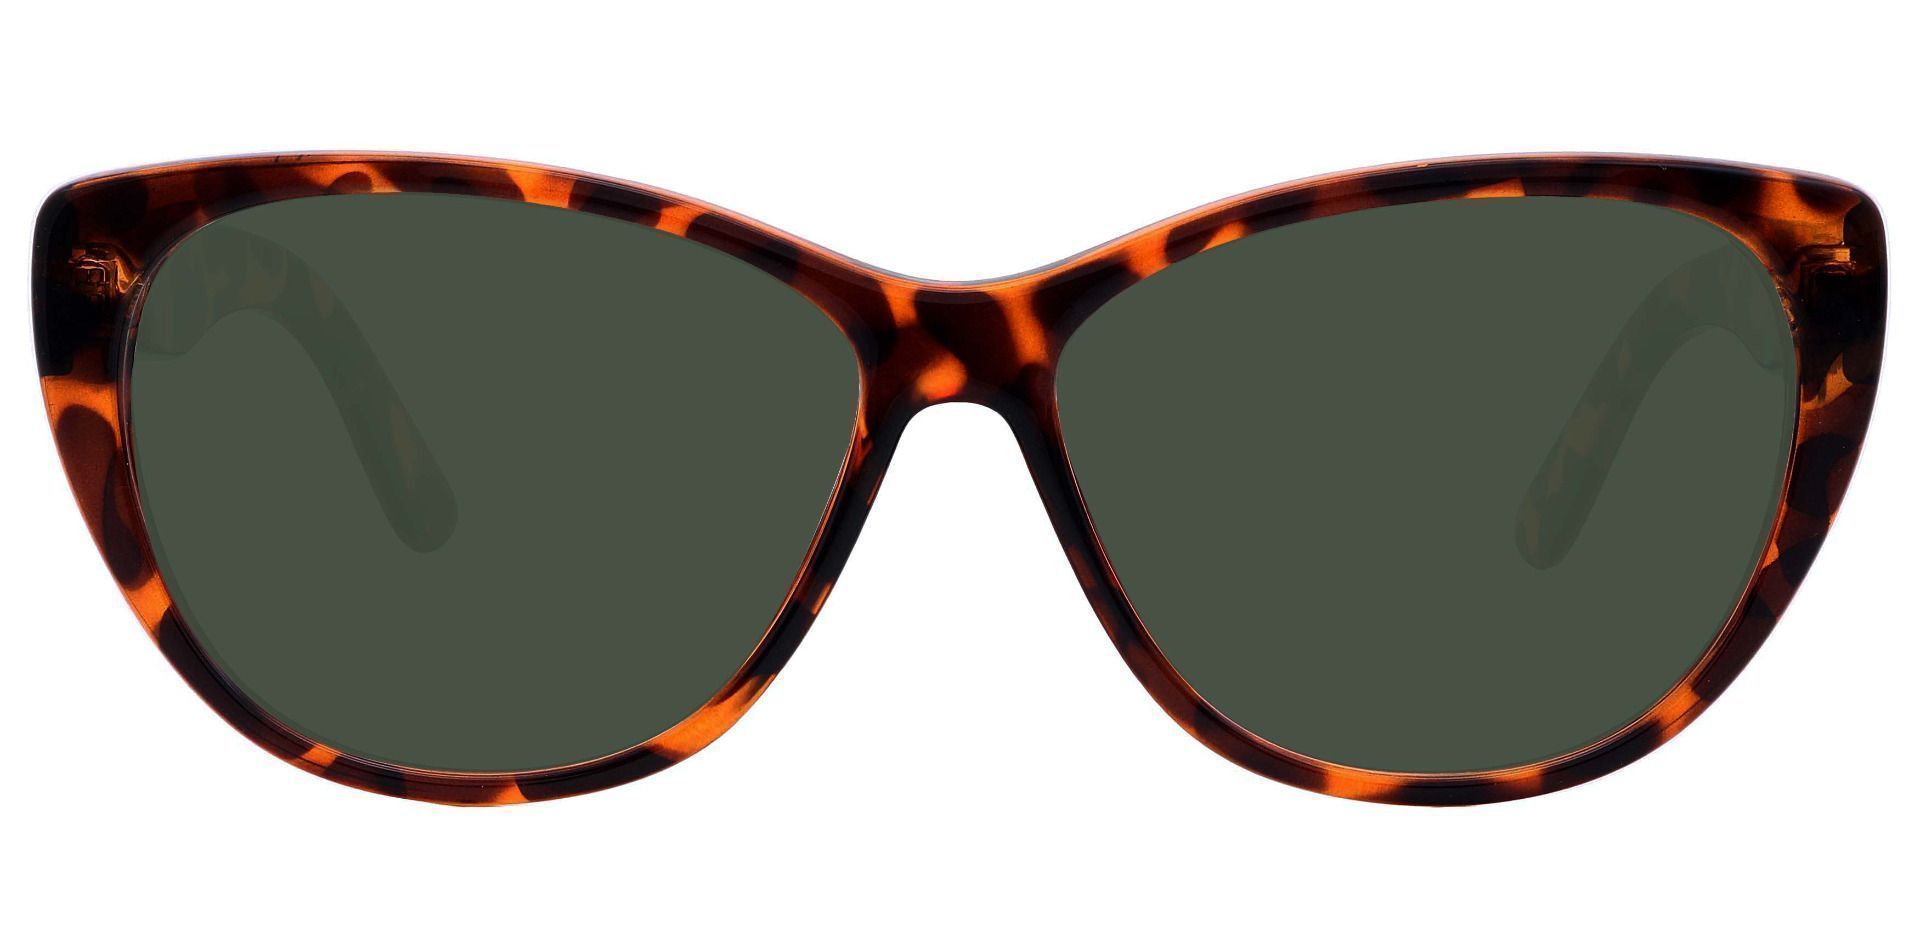 Lynn Cat-Eye Reading Sunglasses - Tortoise Frame With Green Lenses